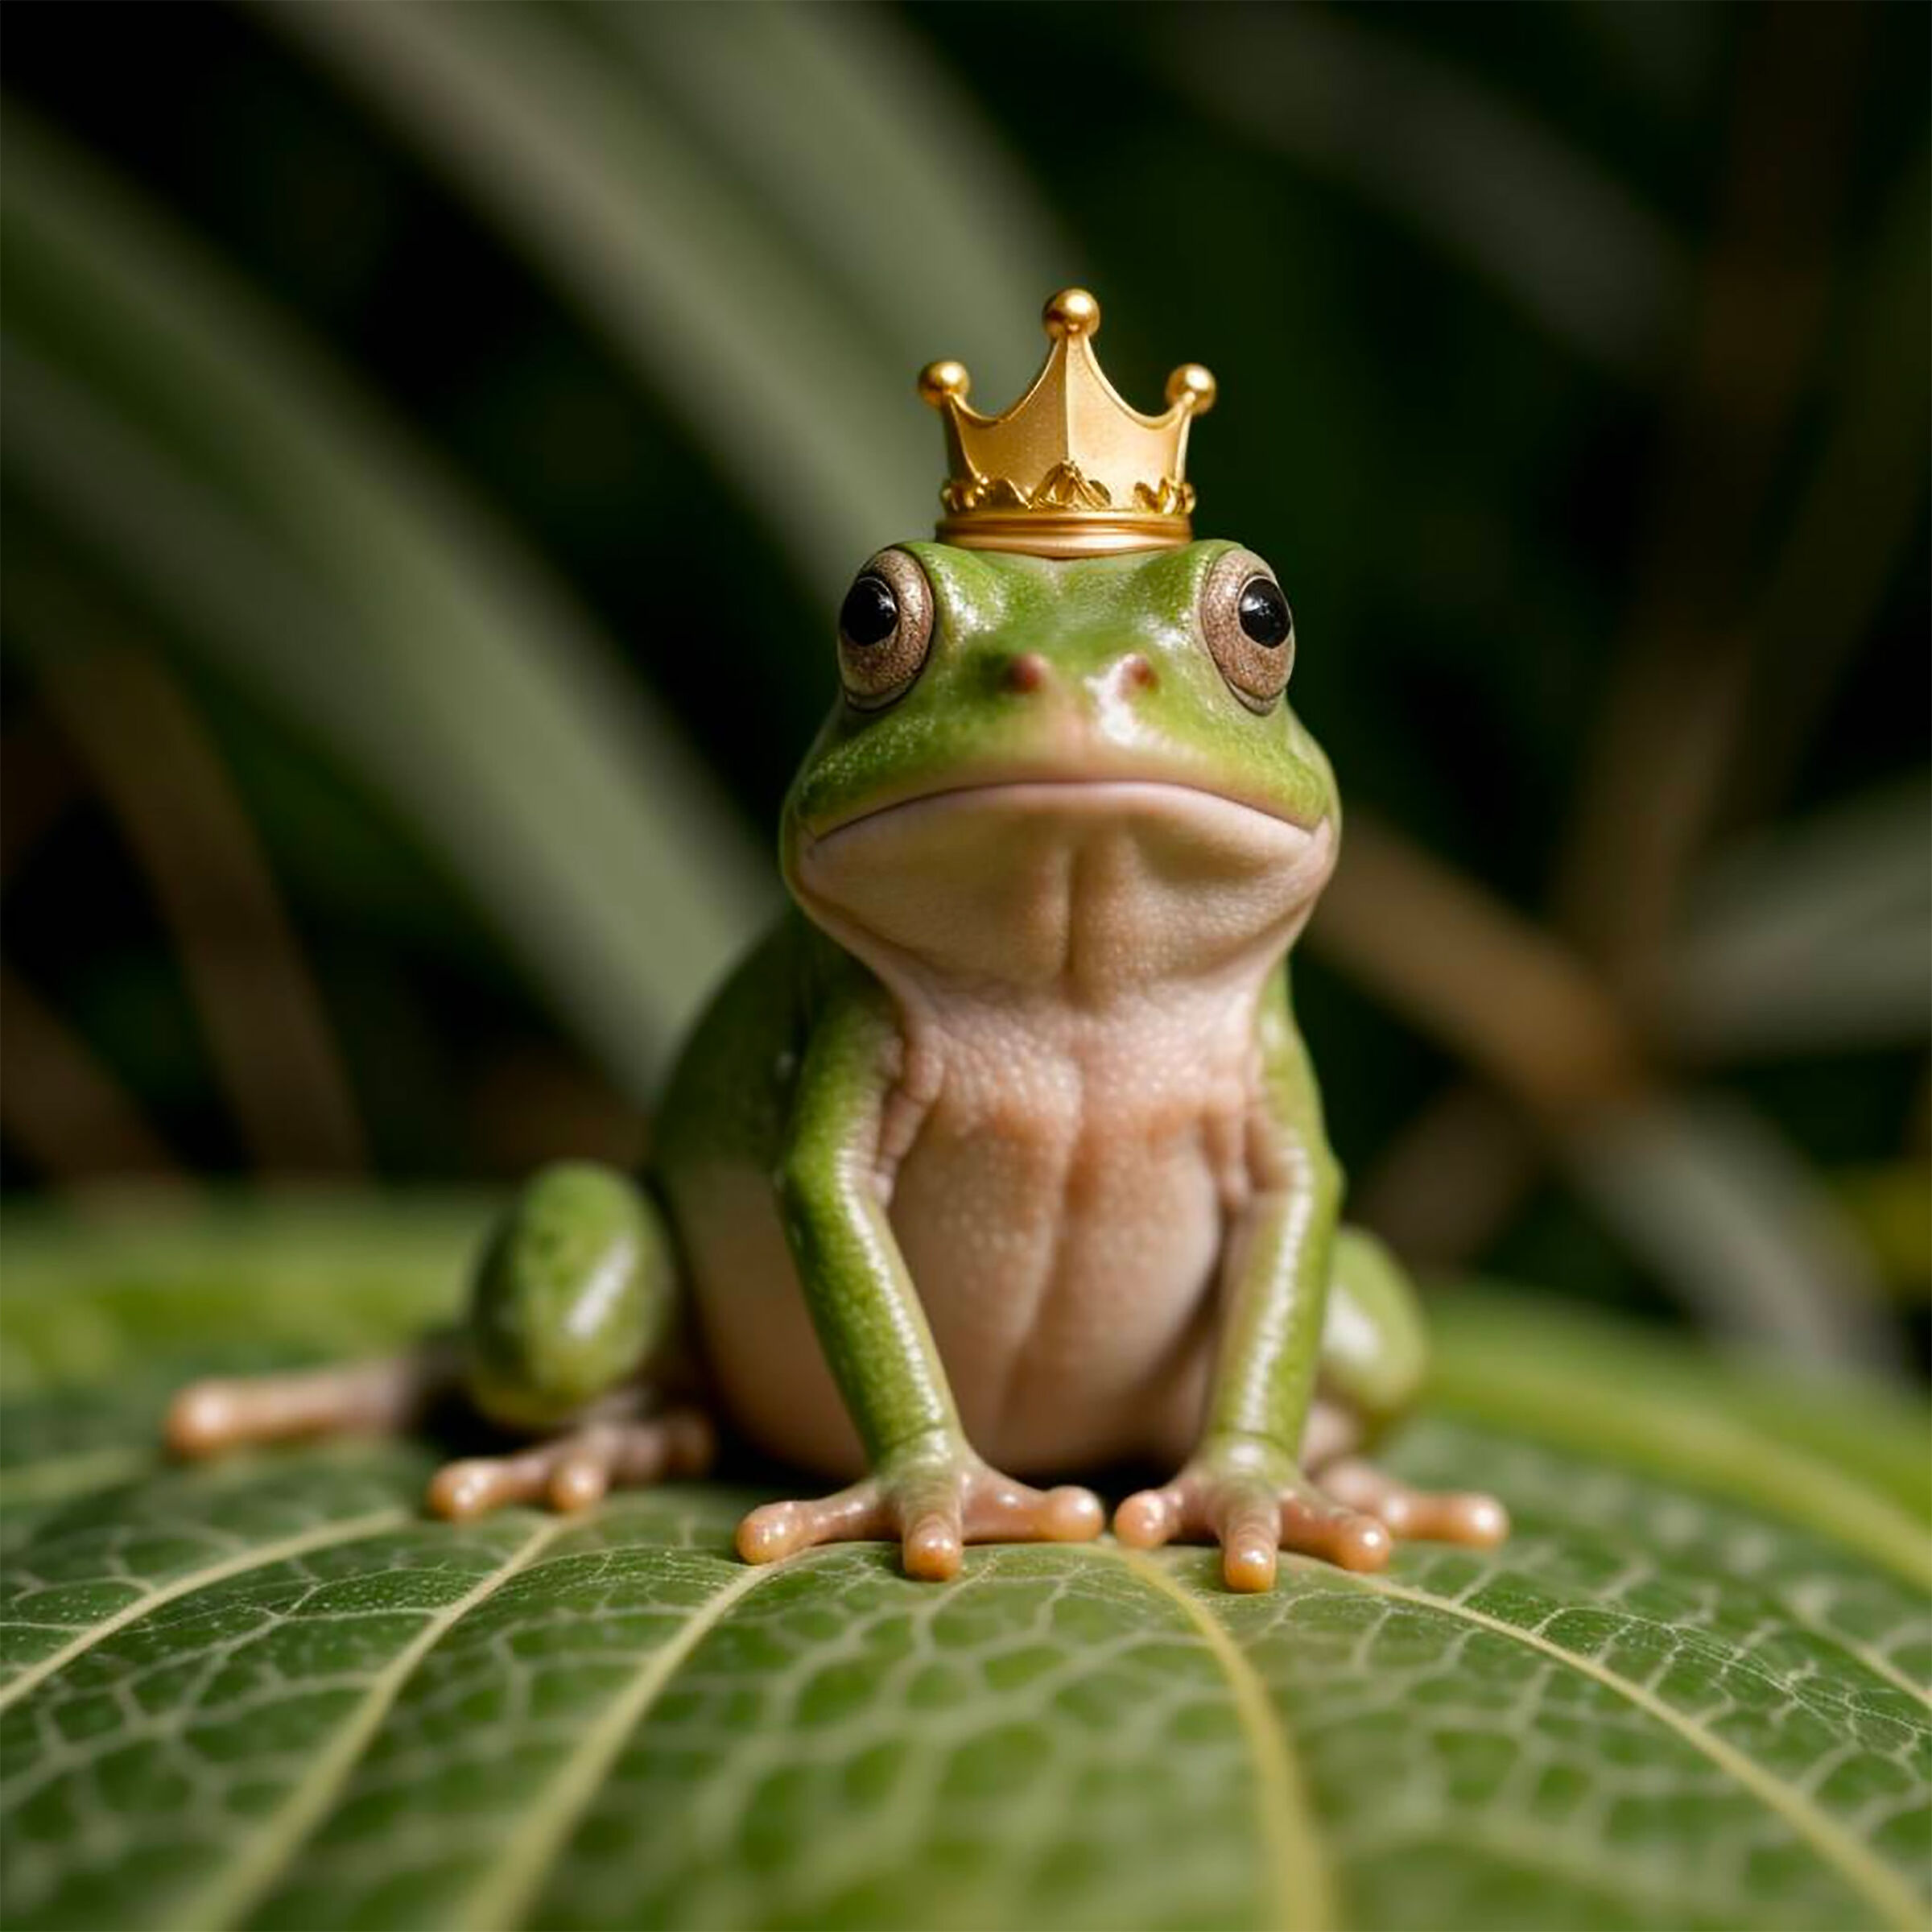 Frog prince...